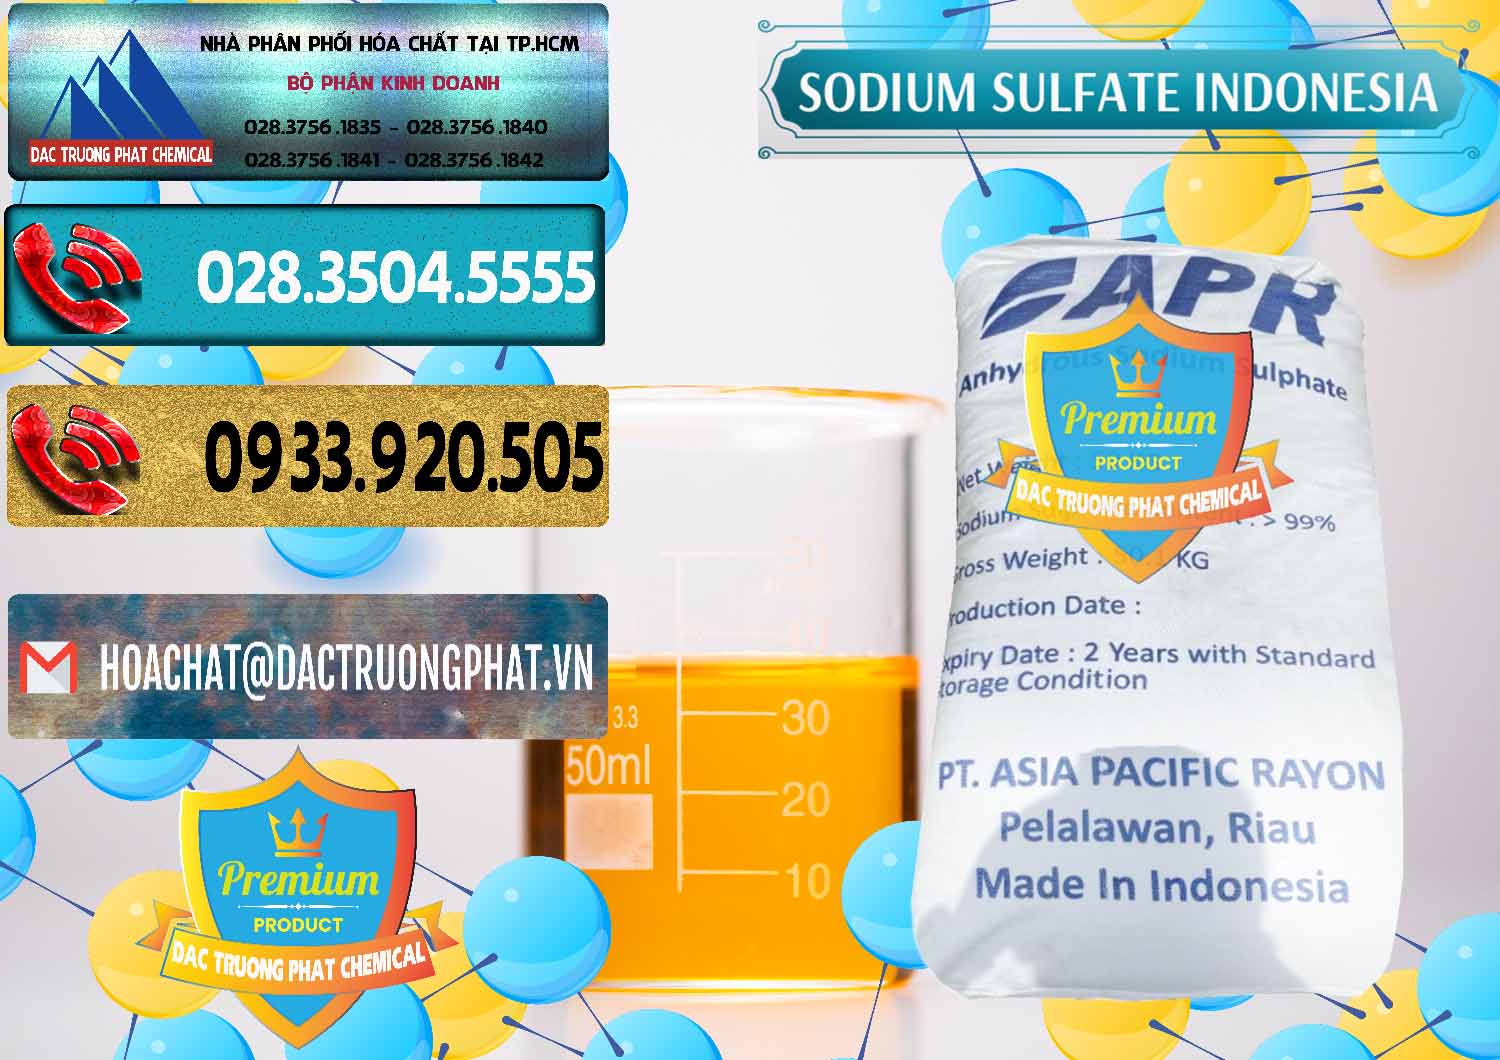 Chuyên bán - phân phối Sodium Sulphate - Muối Sunfat Na2SO4 APR Indonesia - 0460 - Nơi chuyên cung cấp ( nhập khẩu ) hóa chất tại TP.HCM - hoachatdetnhuom.com